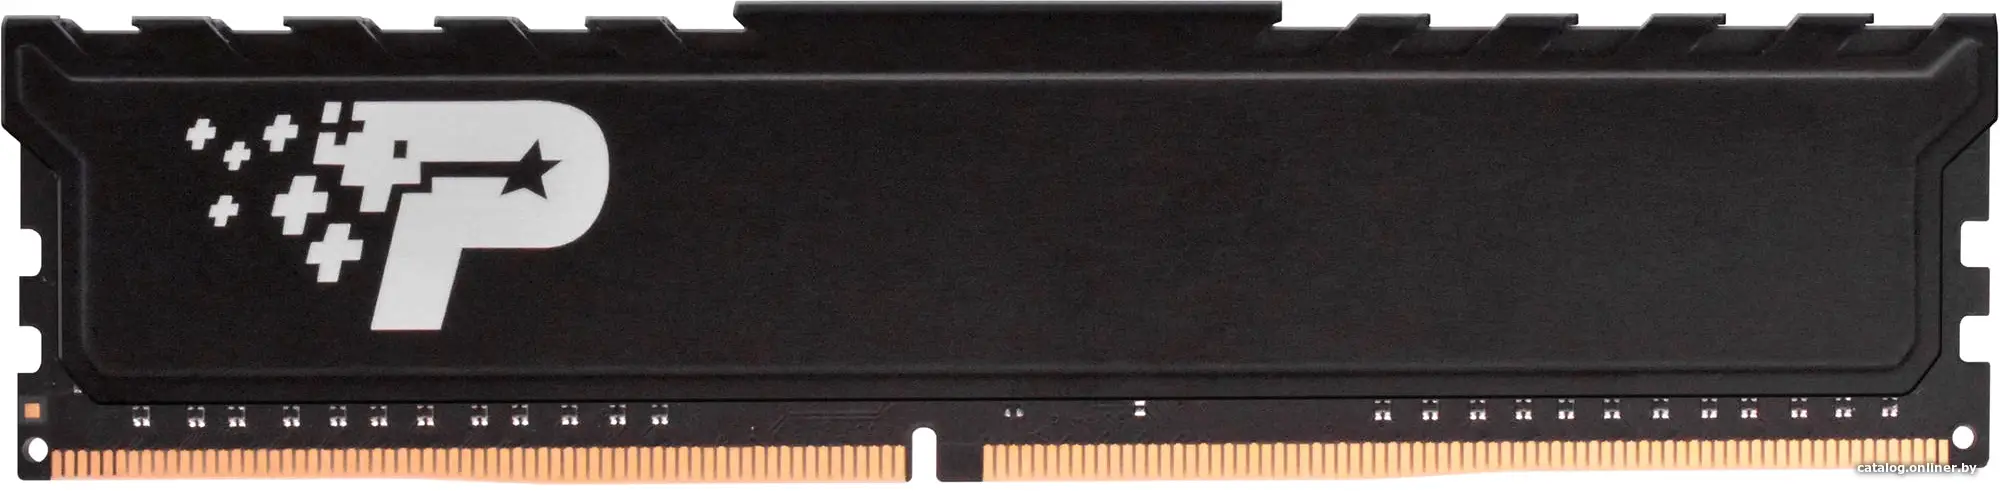 Купить Оперативная память Patriot DDR4 16Gb 3200MHz (PSP416G32002H1), цена, опт и розница